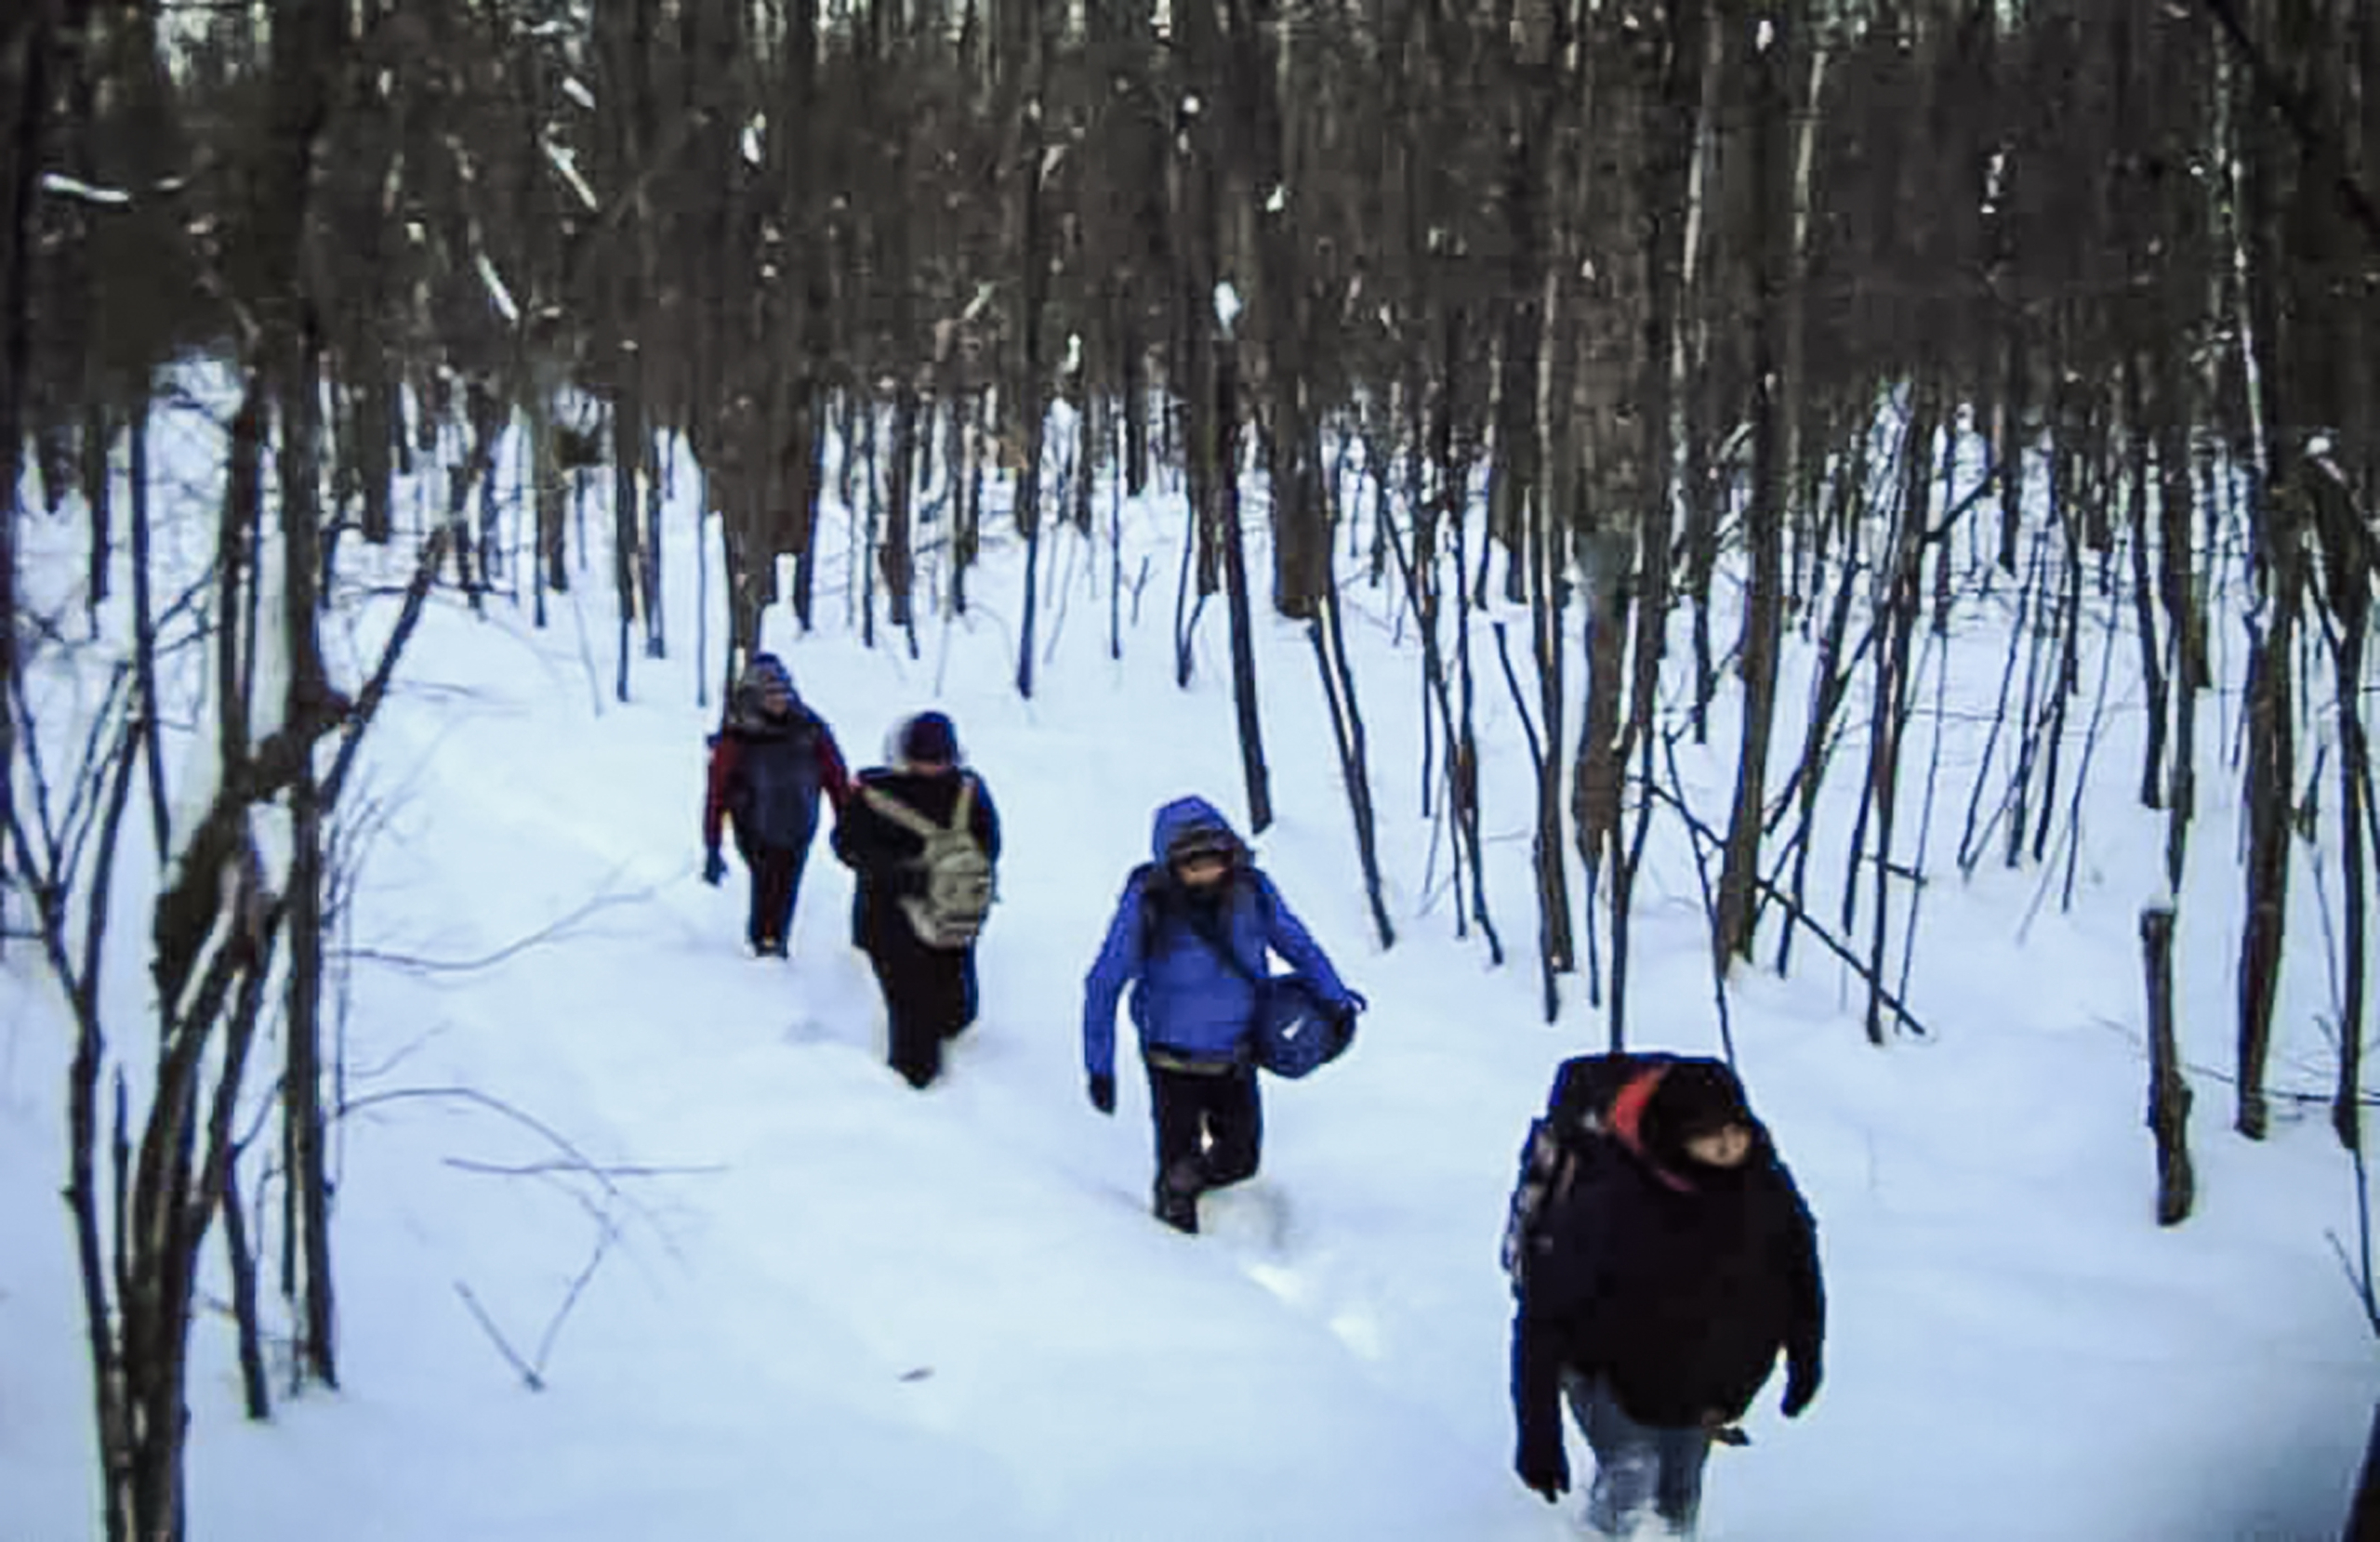 Những người nhập cư bất hợp pháp bị bắt gặp đang đi bộ trong tuyết ở Khu vực Swanton giáp Canada, trong bức ảnh mới đây của Lực lượng Tuần tra Biên giới. (Ảnh: Lực lượng Tuần tra Biên giới Hoa Kỳ)